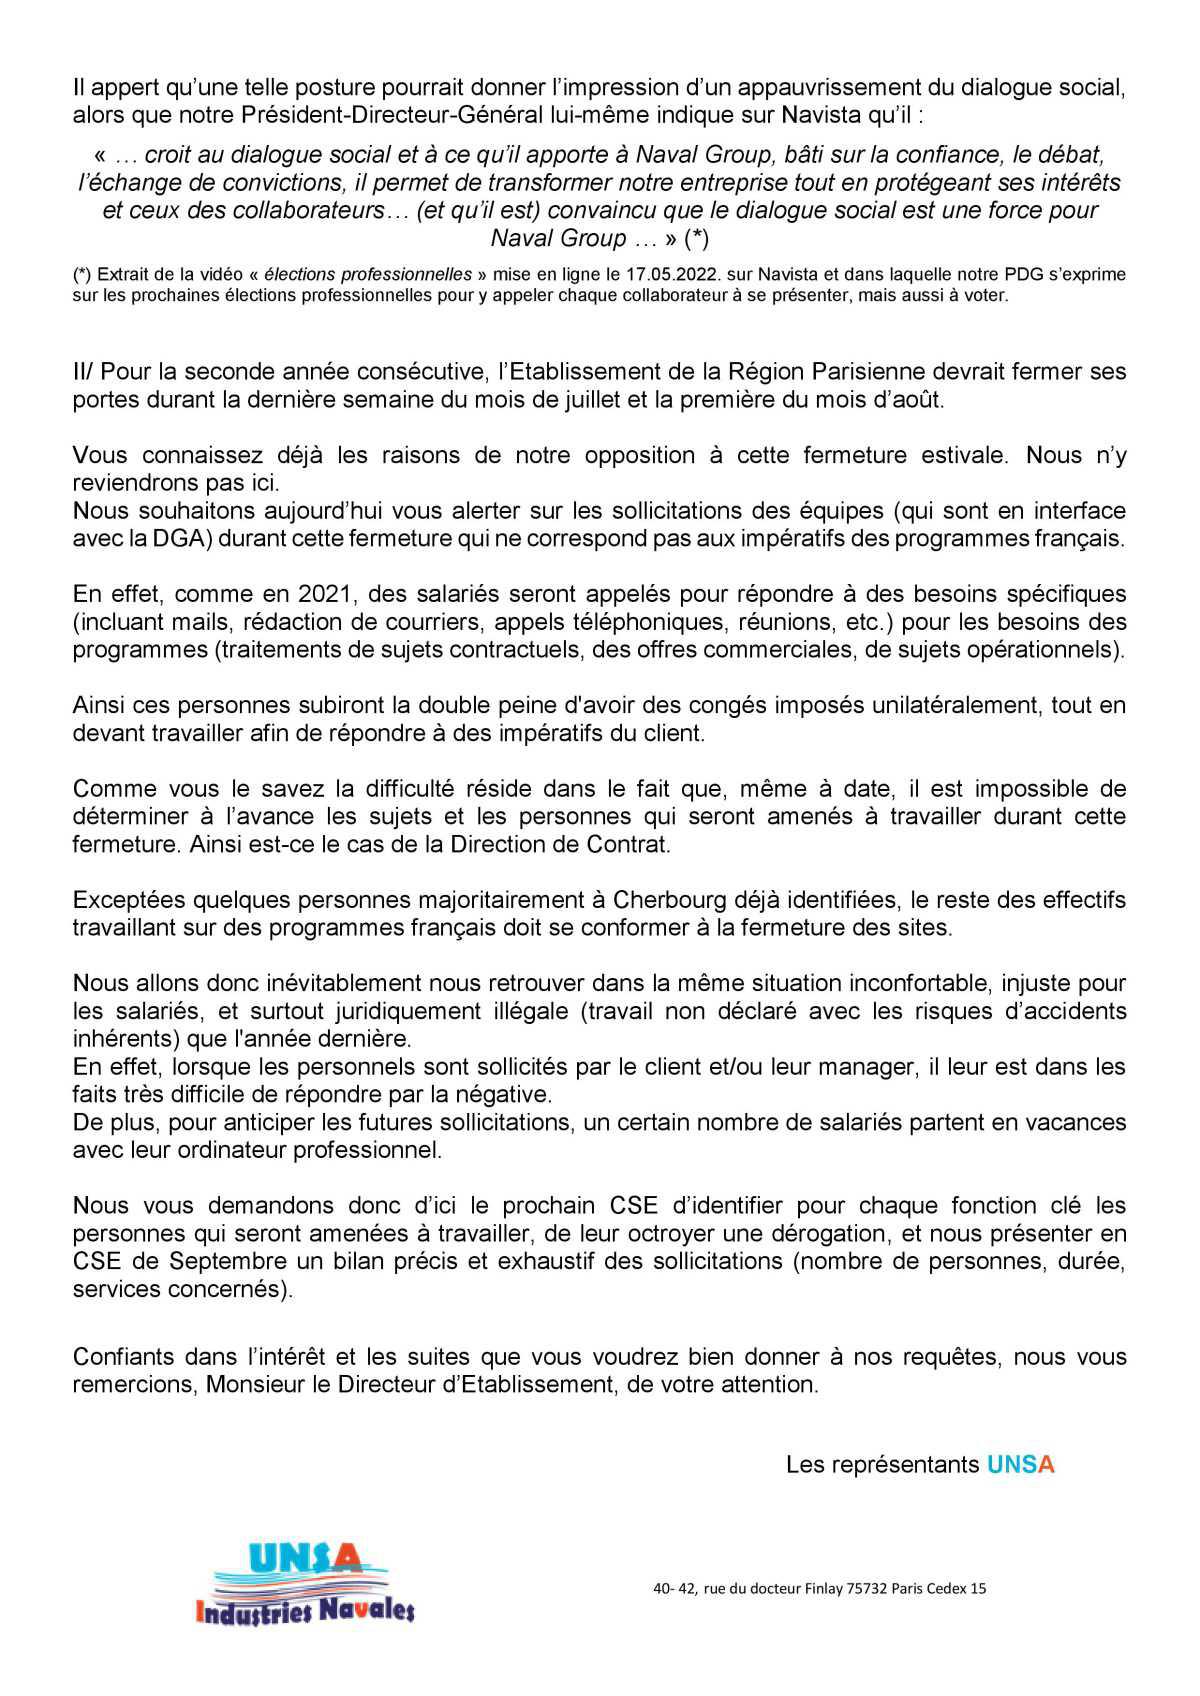 CSE Région Parisienne - Réunion du 14 juin 2022 - Déclaration Liminaire